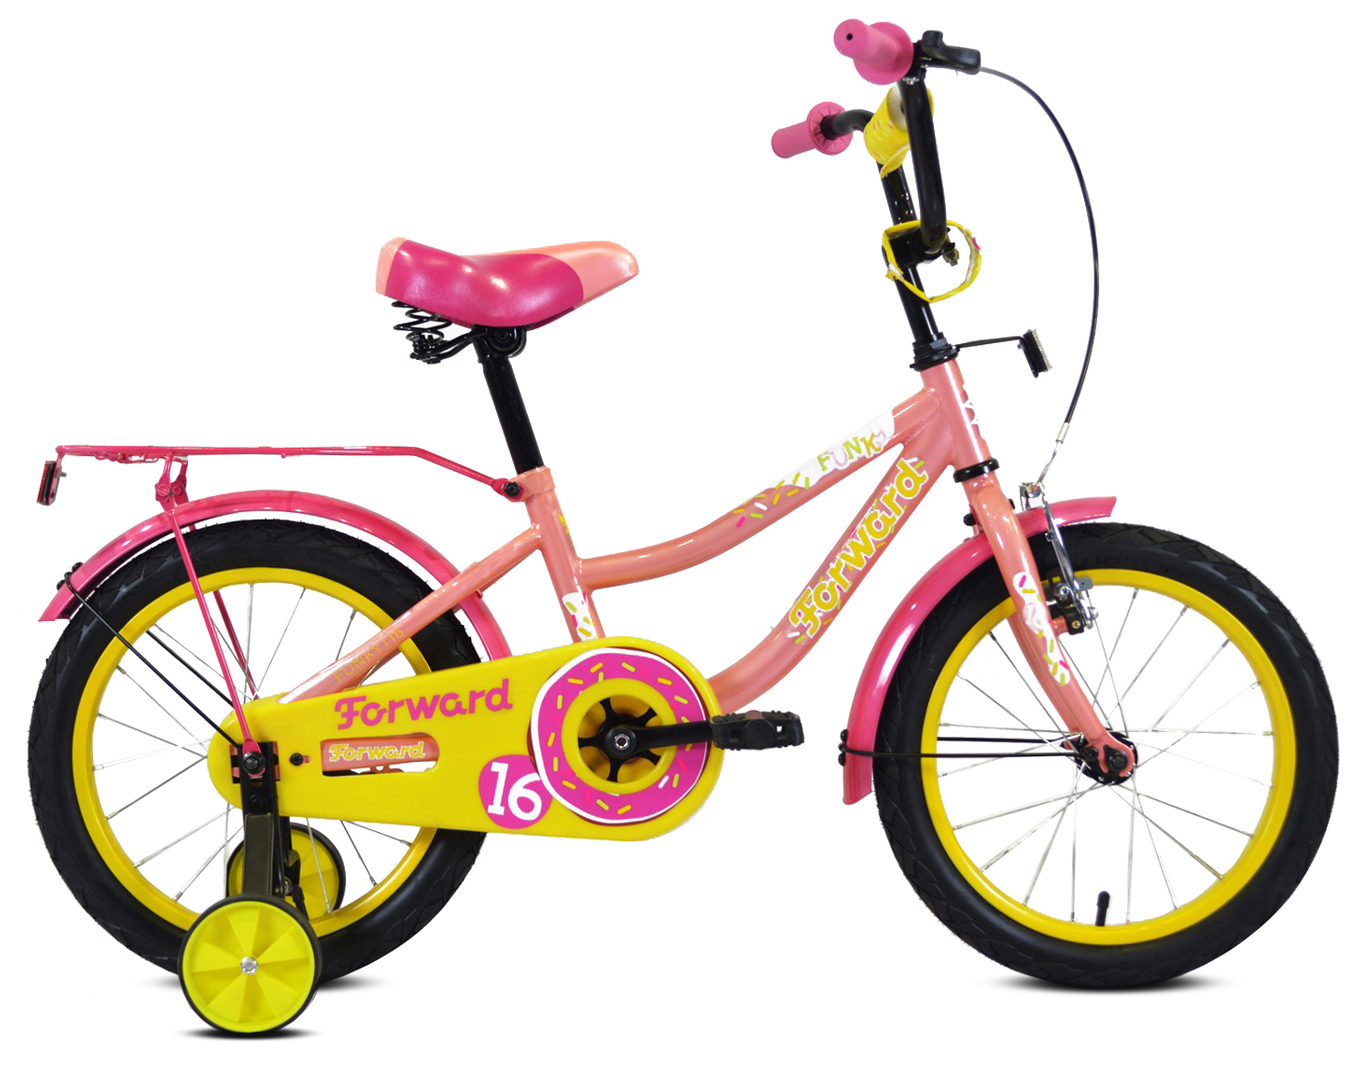  Отзывы о Трехколесный детский велосипед Forward Funky 16 2021